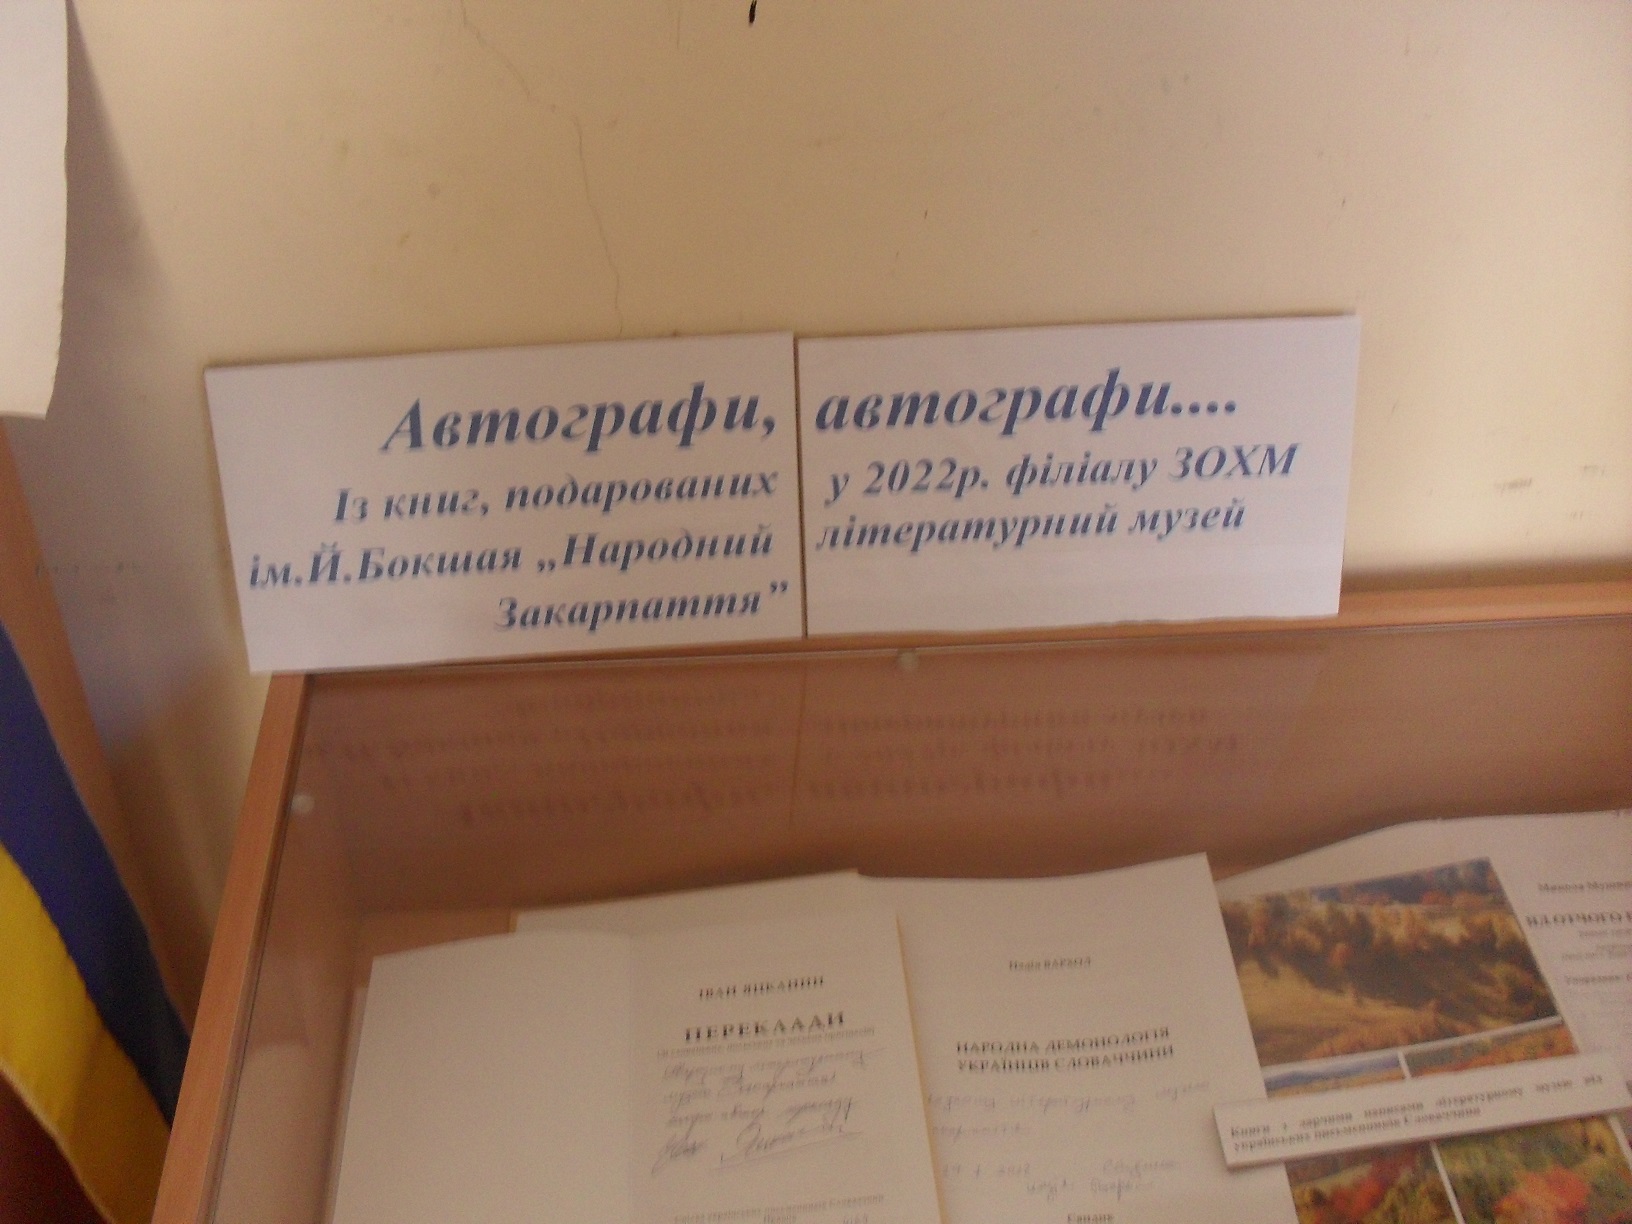 Виставка книг, подарованих у 2022 році філіалу ЗОХМ ім. Й. Бокшая «Народний літературний музей Закарпаття»